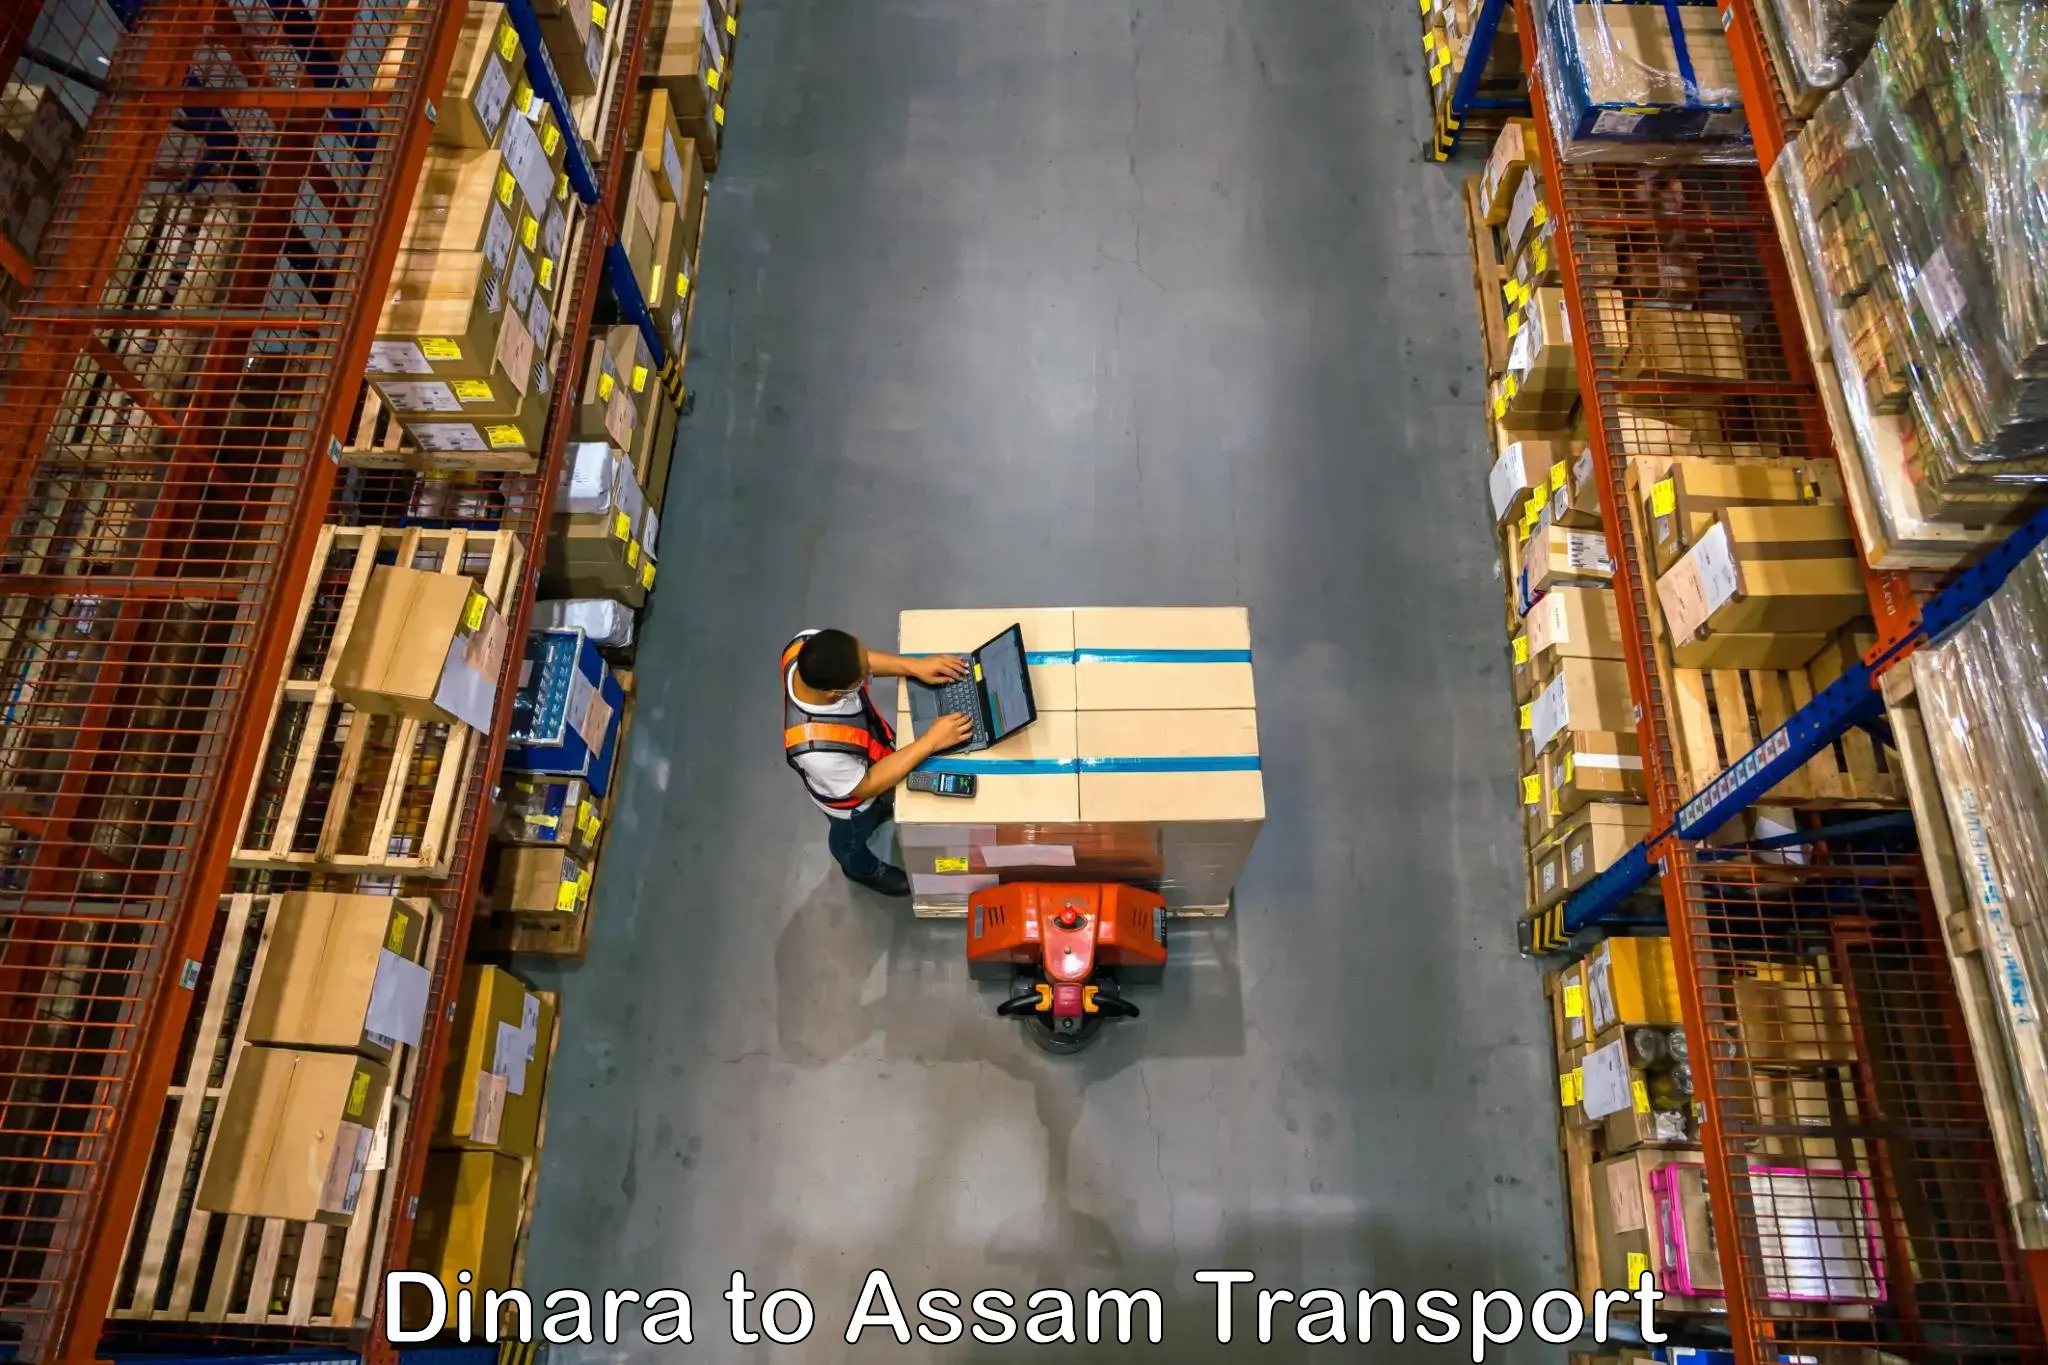 Daily transport service Dinara to Tinsukia